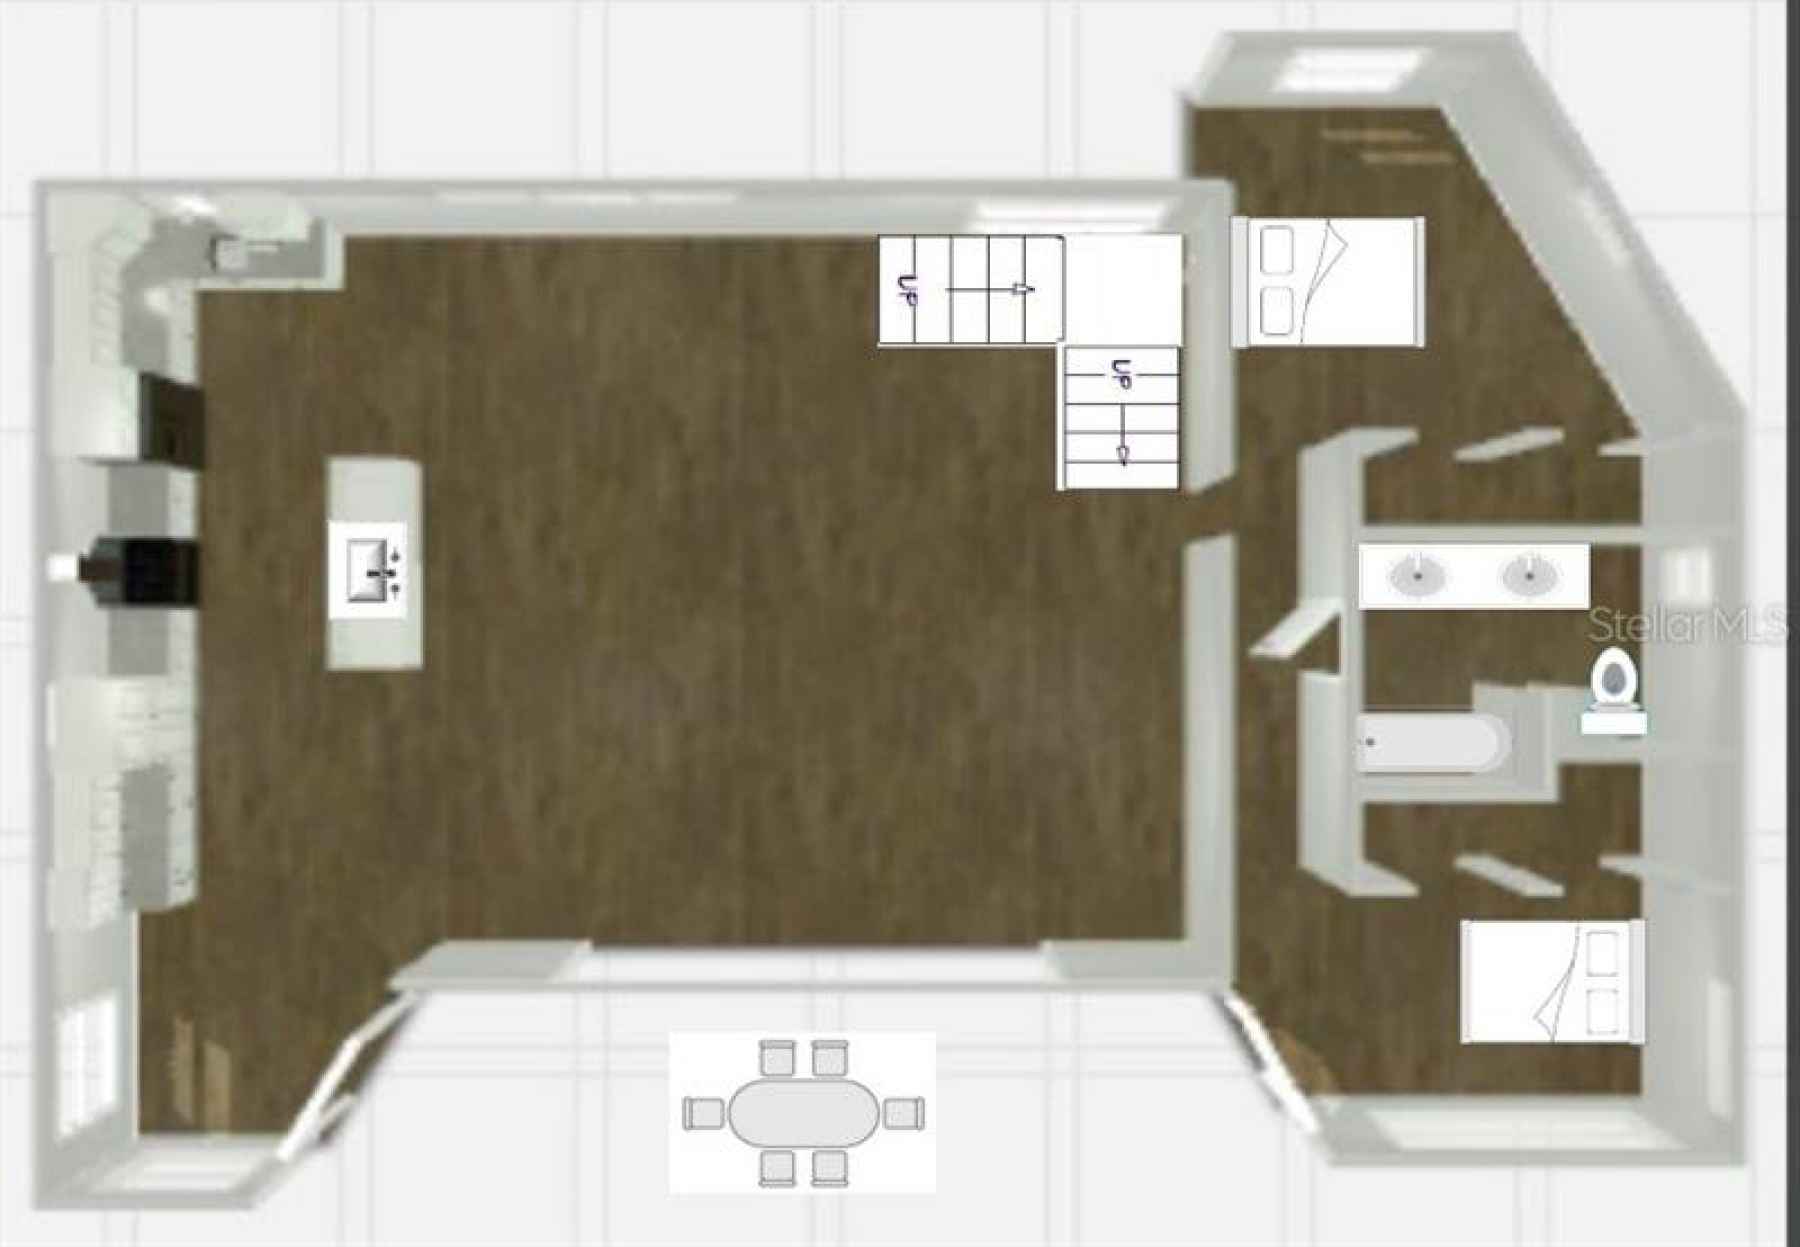 Main level layout